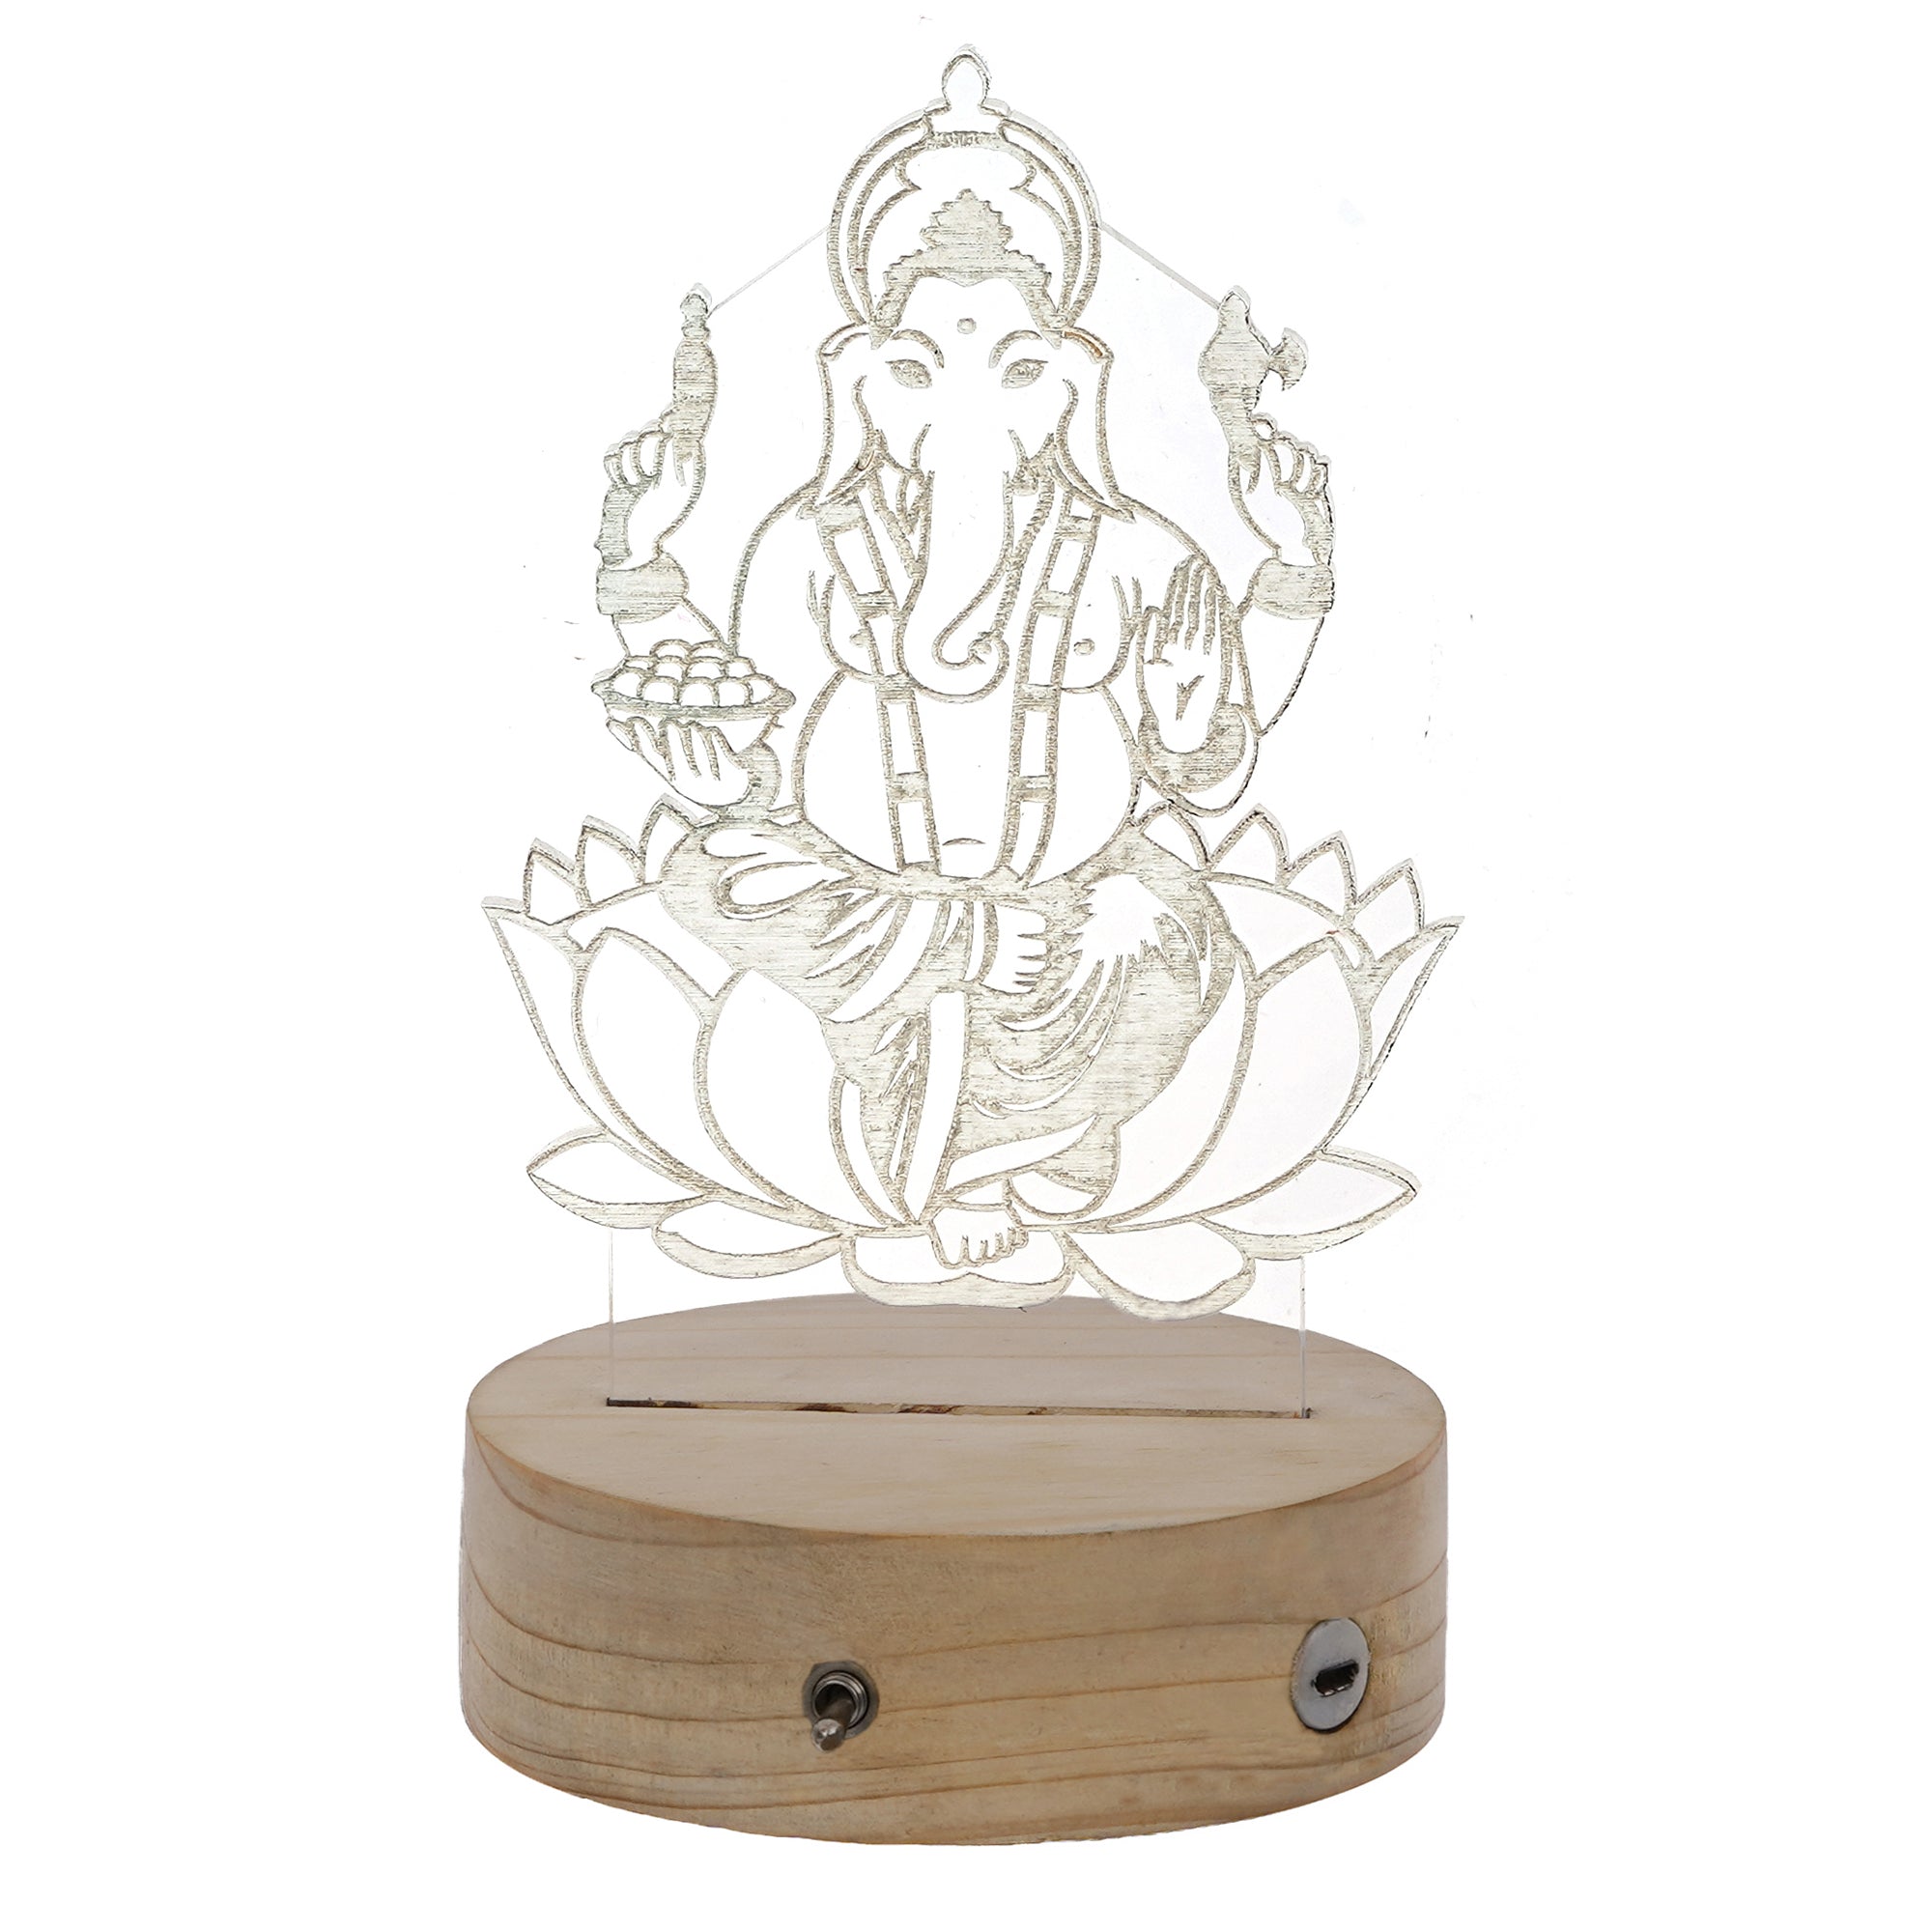 Lord Ganesha Design Carved on Acrylic & Wood Base Night Lamp 6